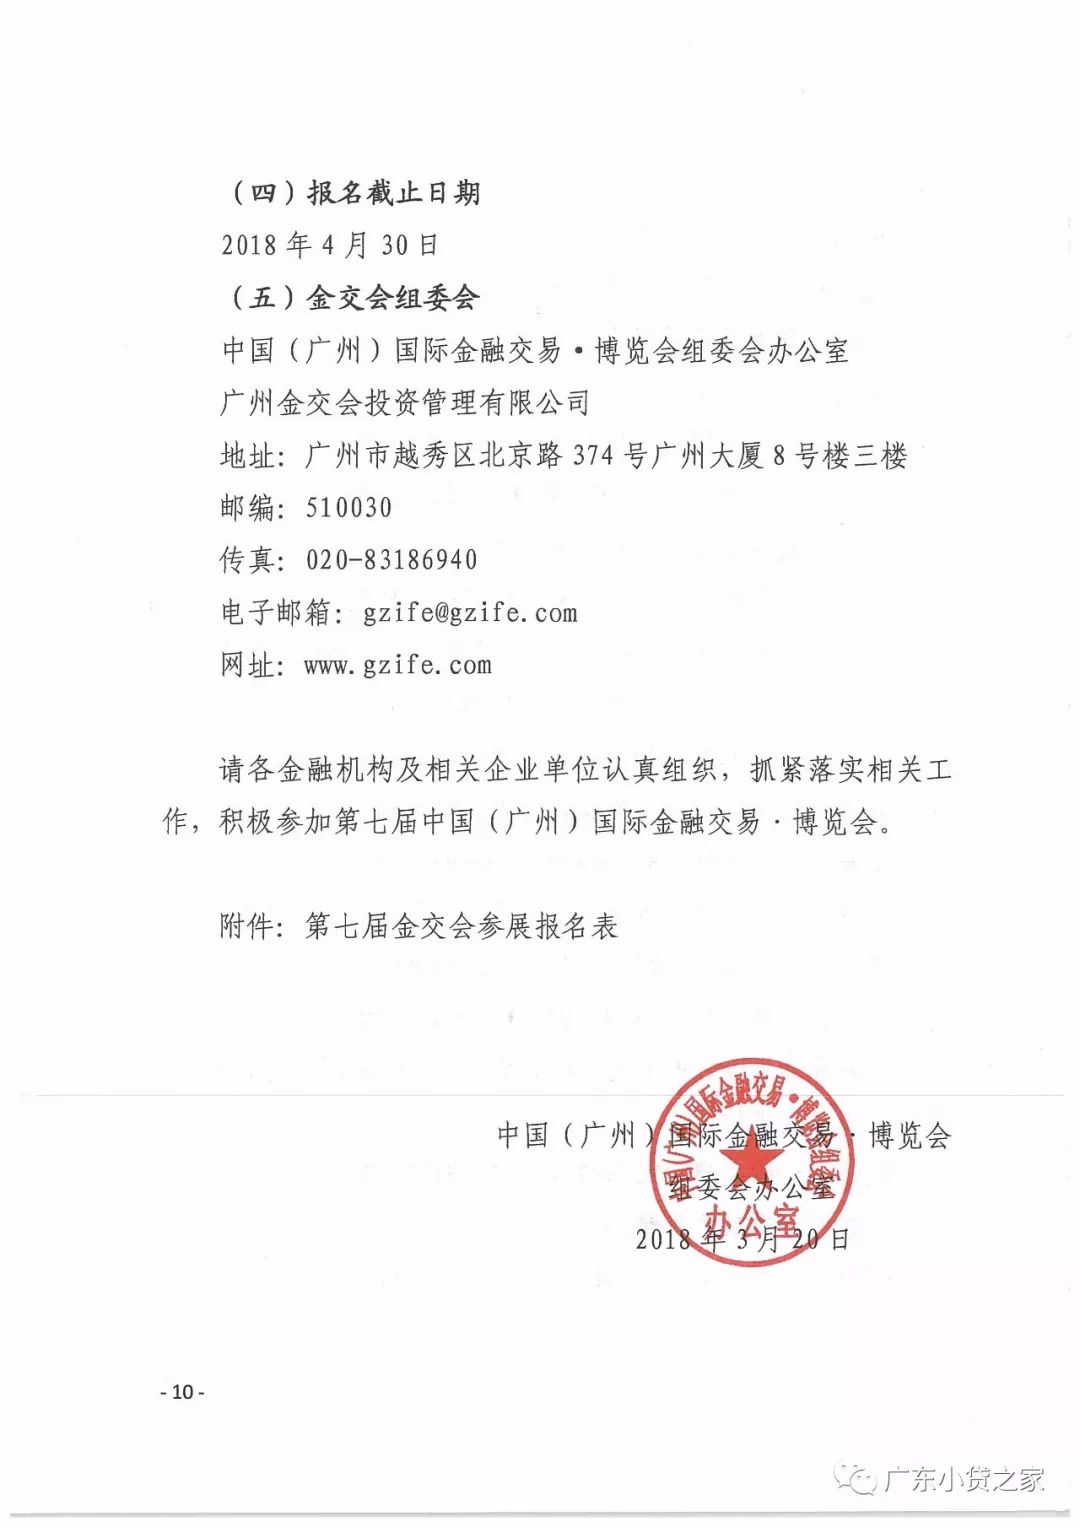 【协会通知】关于邀请会员单位参加第七届中国（广州）国际金融交易•博览会的通知